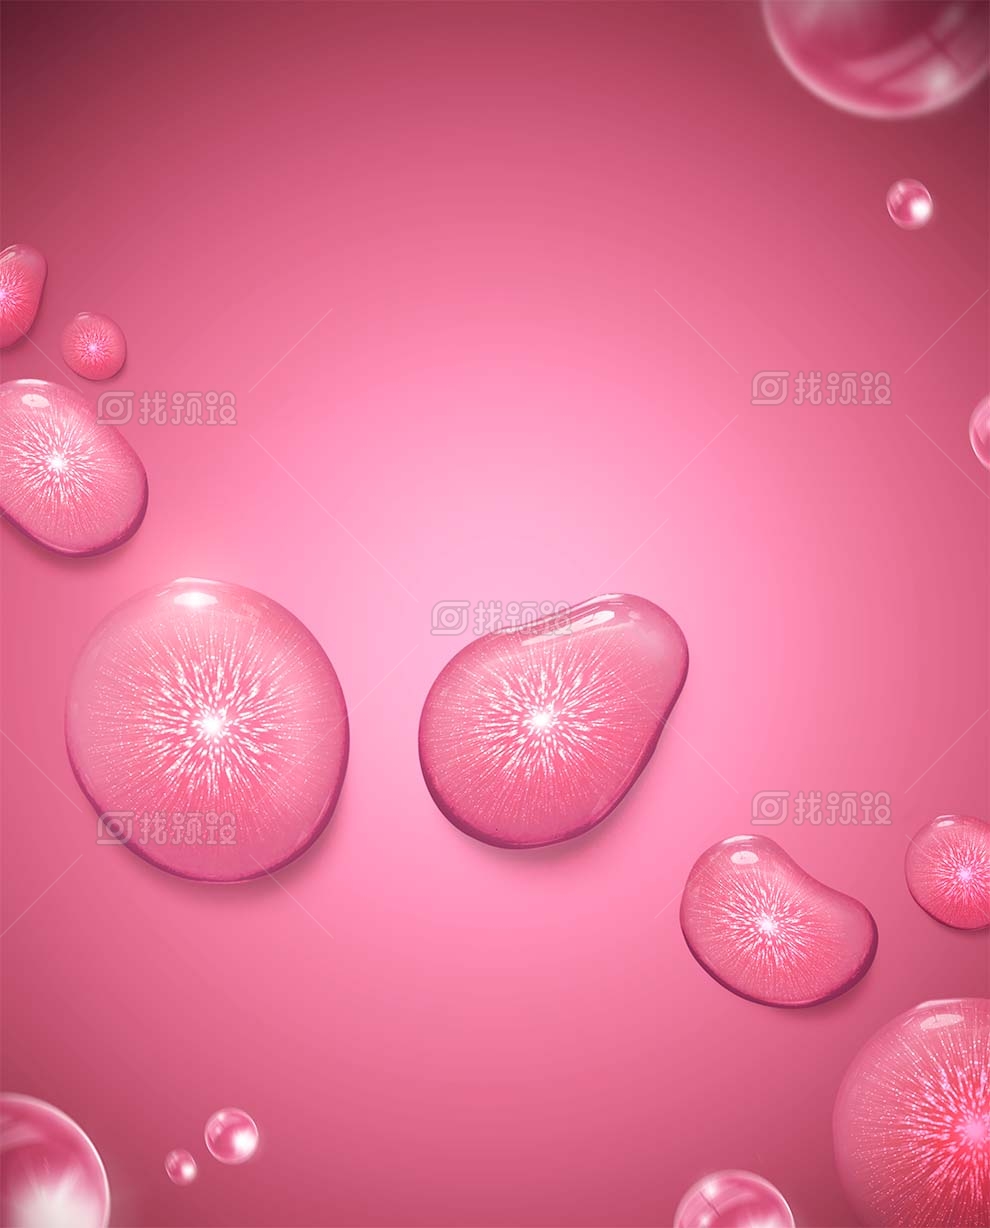 找预设网水珠水滴气泡分子细胞组织psd素材下载2023年3月28日 1673881370 957af493f44d666c0d4f1f5c288a618b